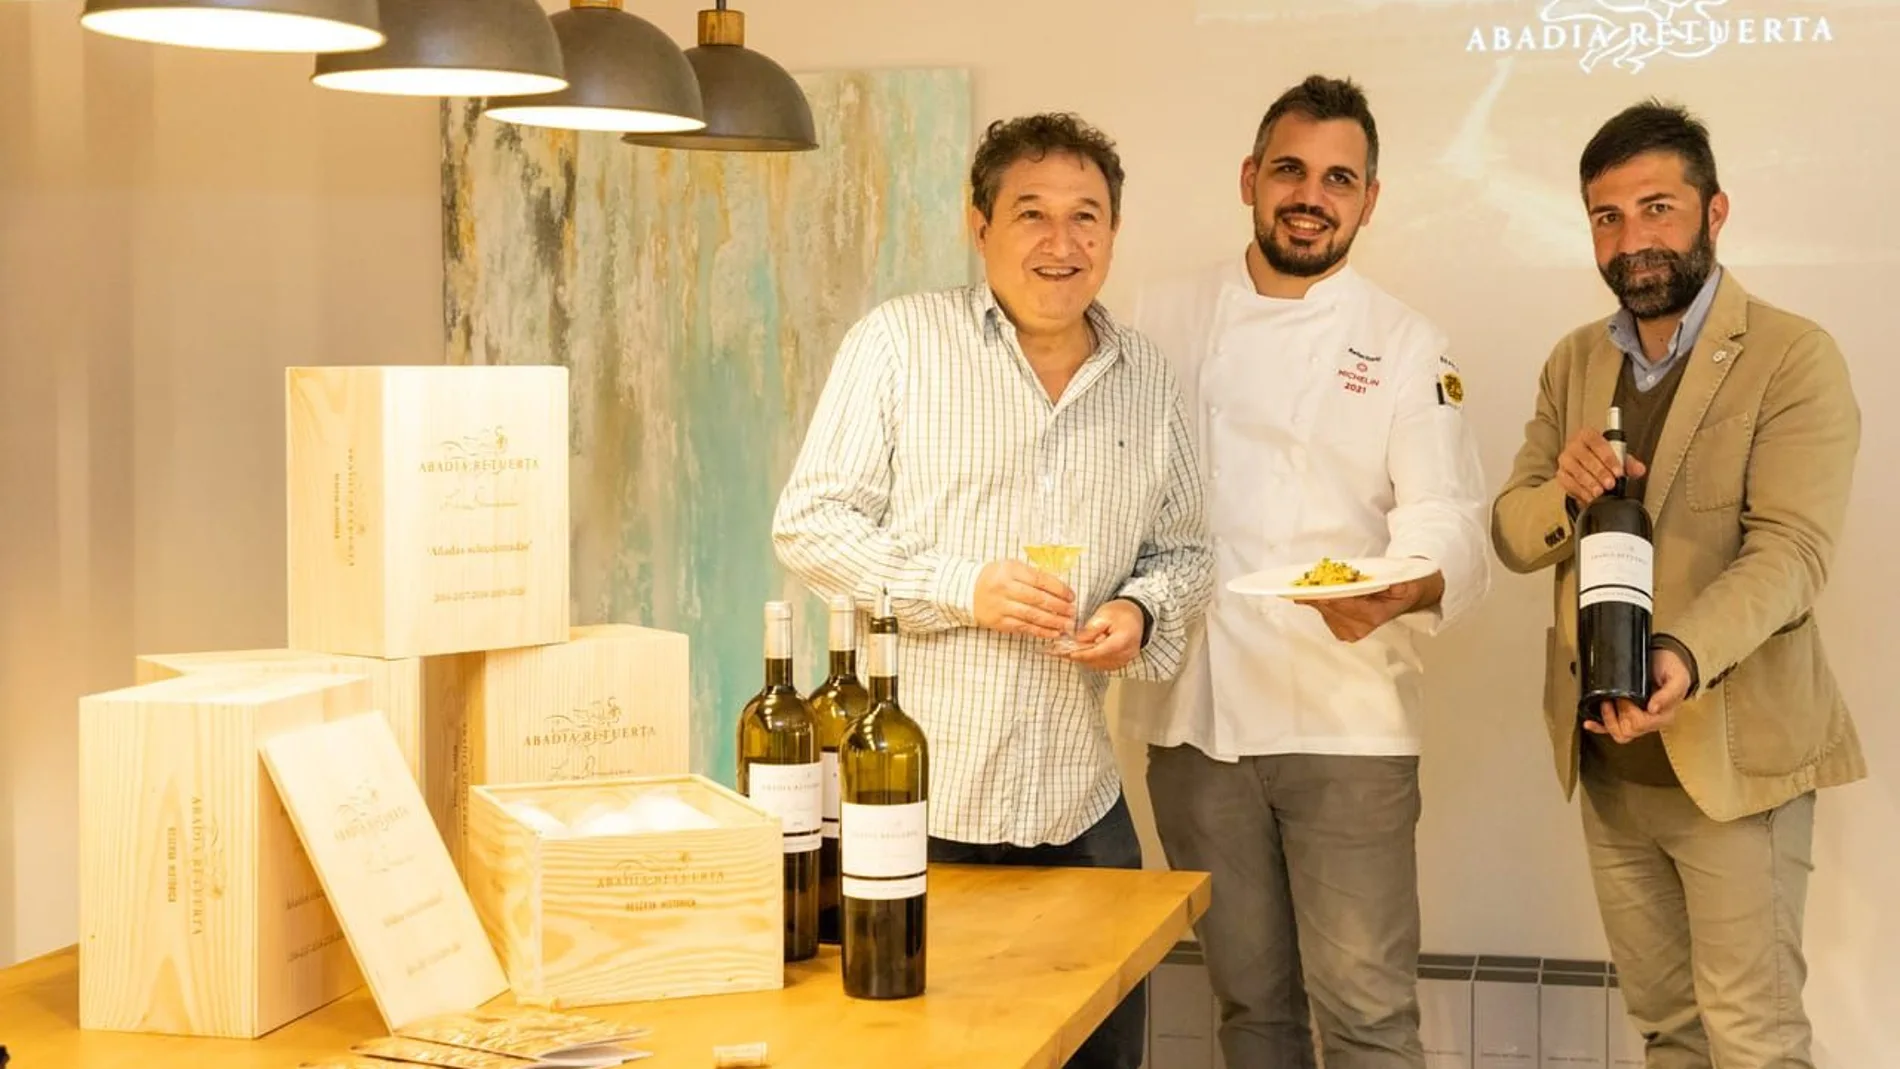 El enólogo de Abadía Retuerta, Ángel Anocíbar, y su chef, Marc Segarra, durante la presentación